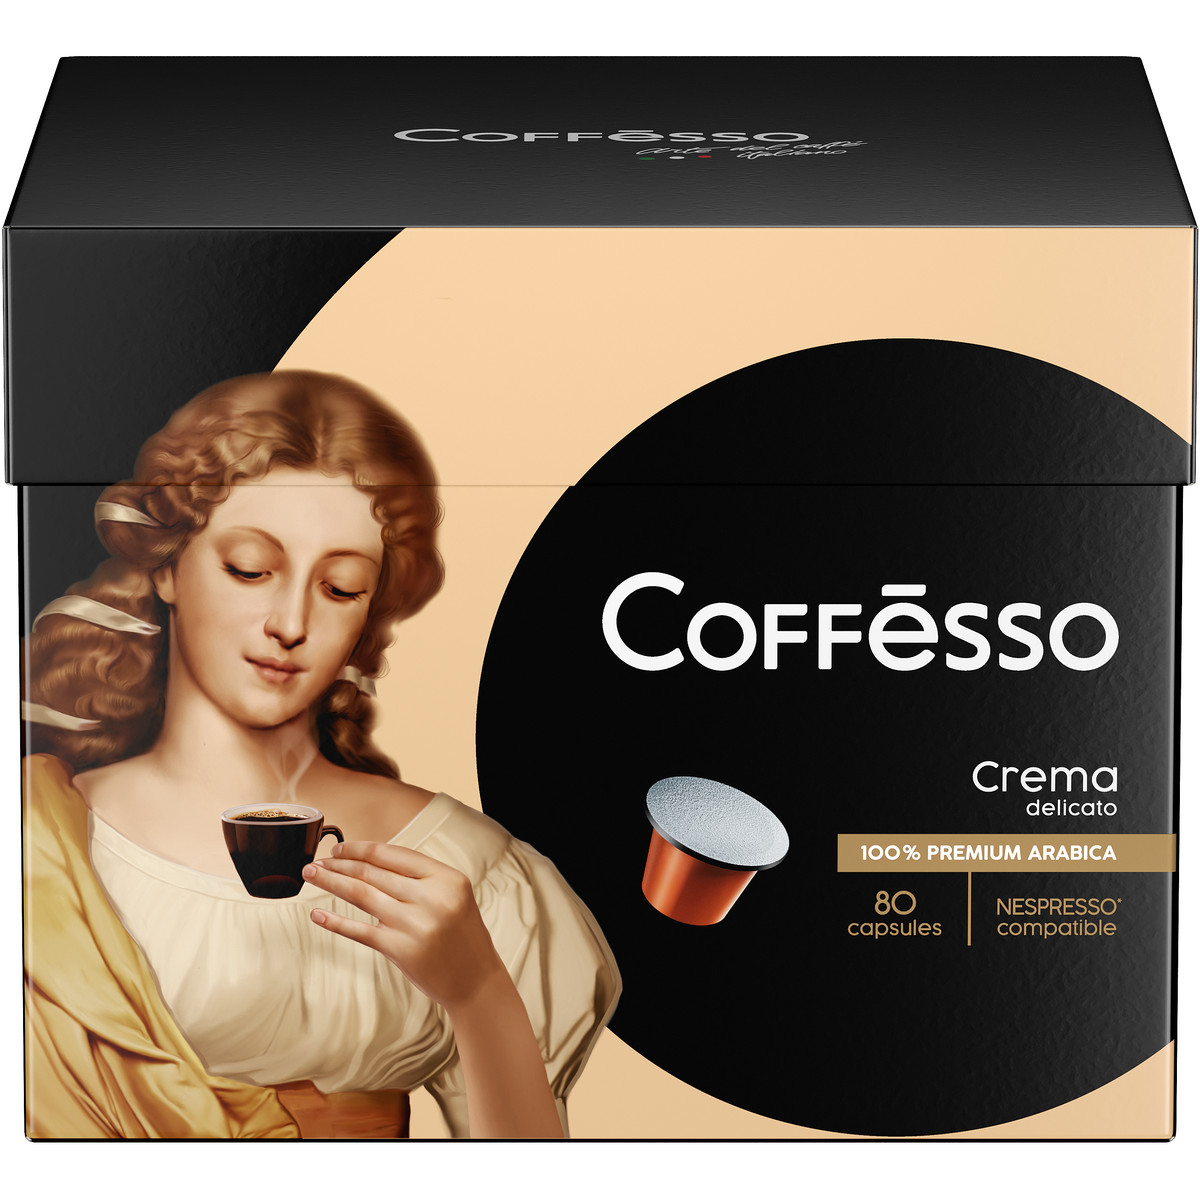 Кофе Coffesso Crema Delicato, 80 капсул по 5 г